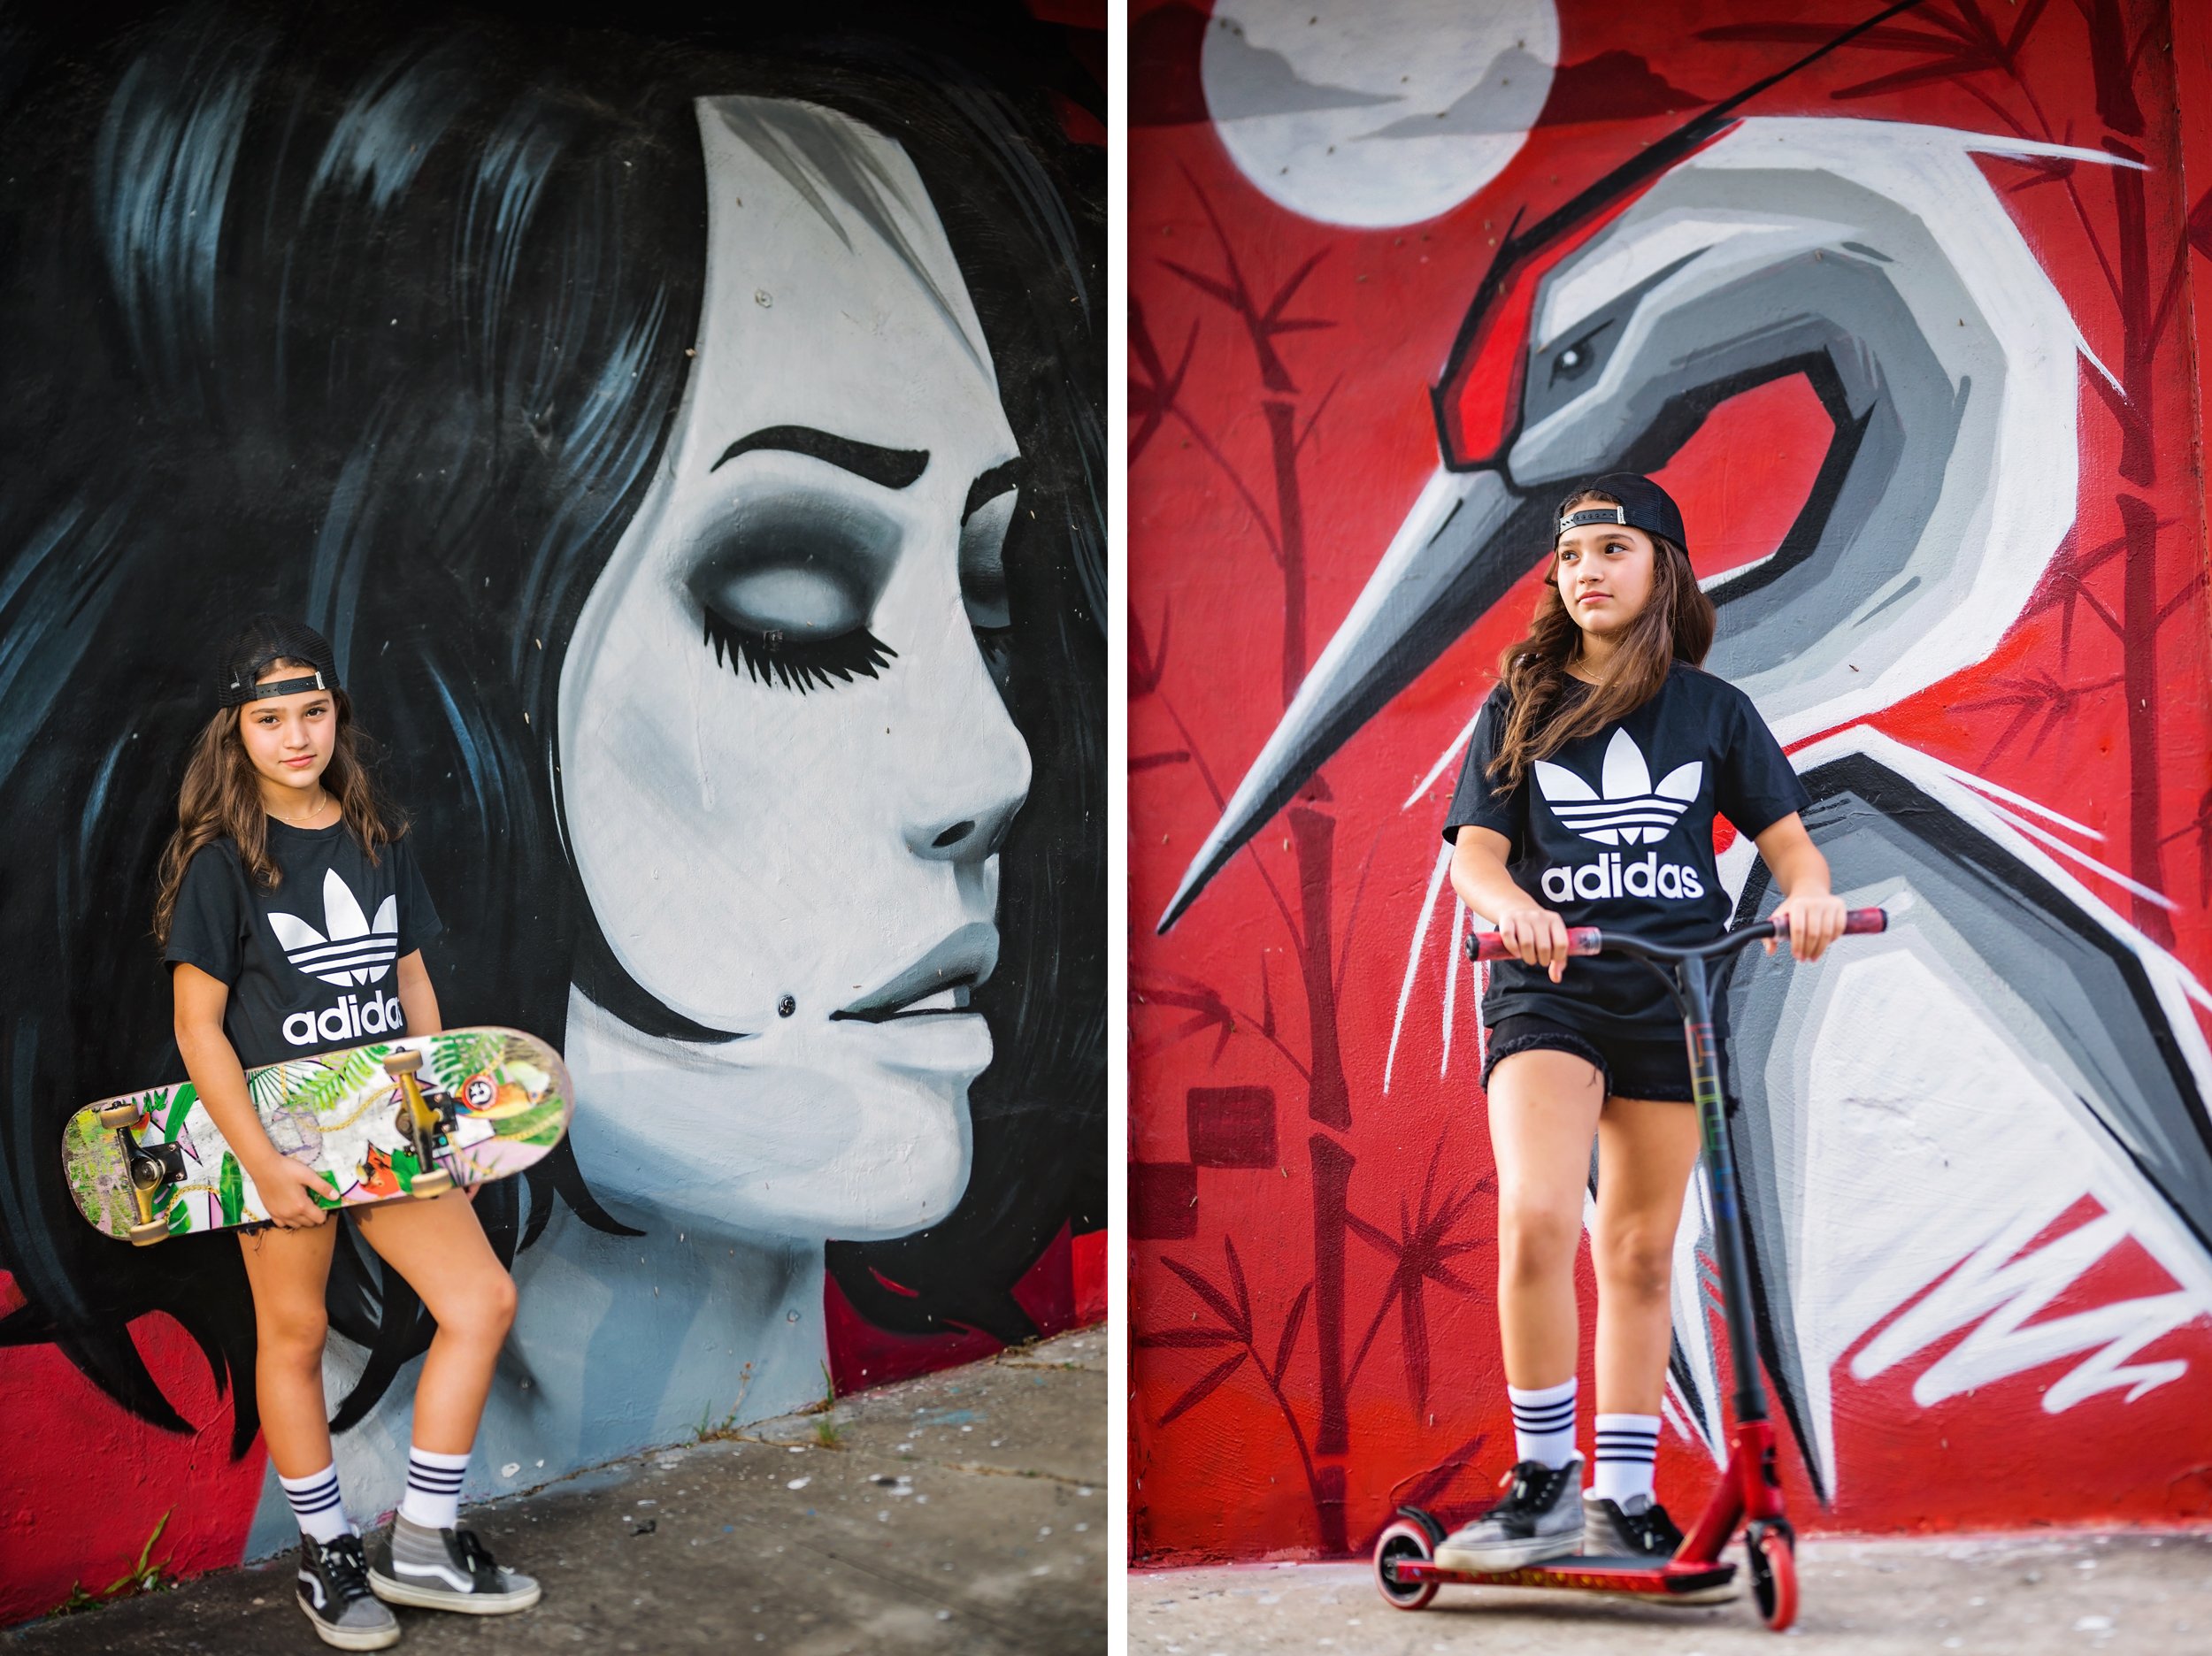 skateboard girl.jpg